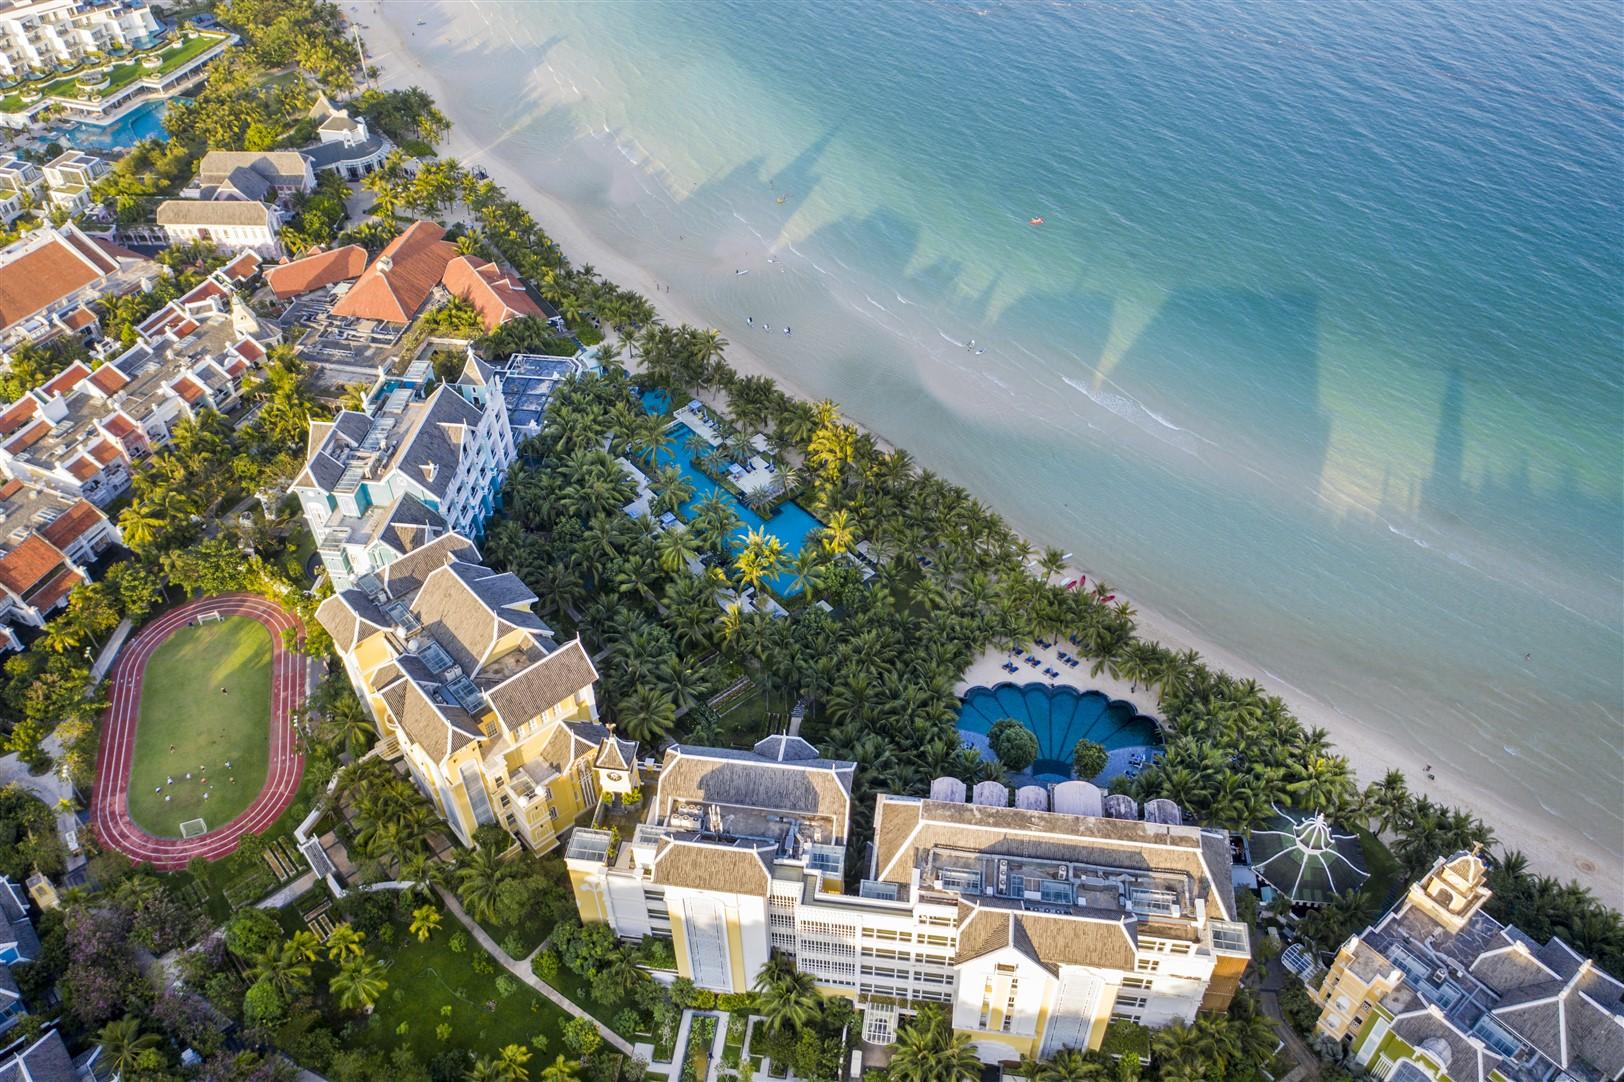 JW Marriott Phu Quoc Emerald Bay vừa thắng giải “Khu nghỉ dưỡng biển tốt nhất toàn cầu”